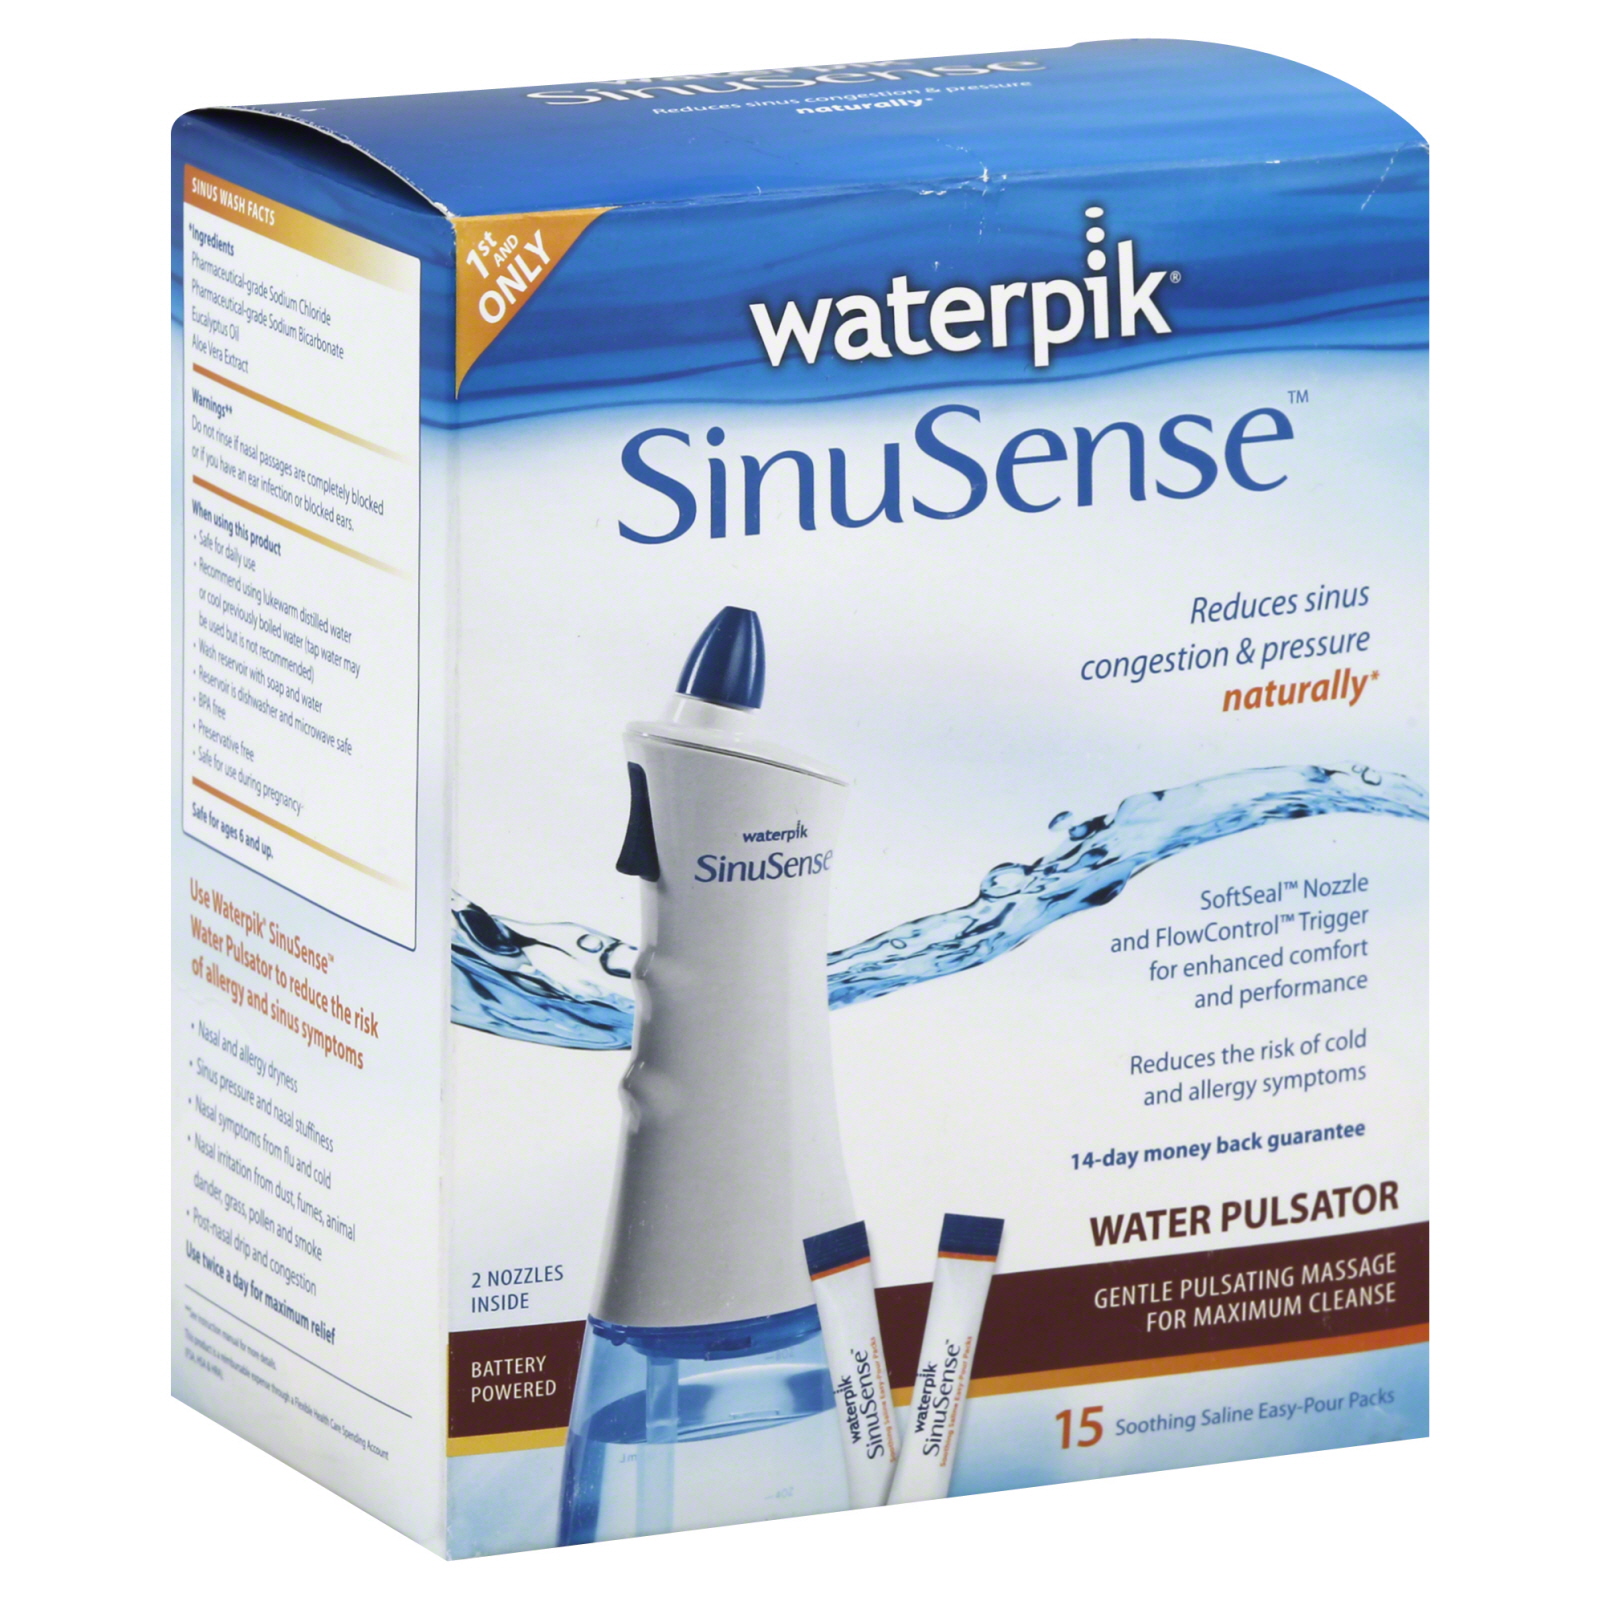 SinuSense Water Pulsator, 15 packs